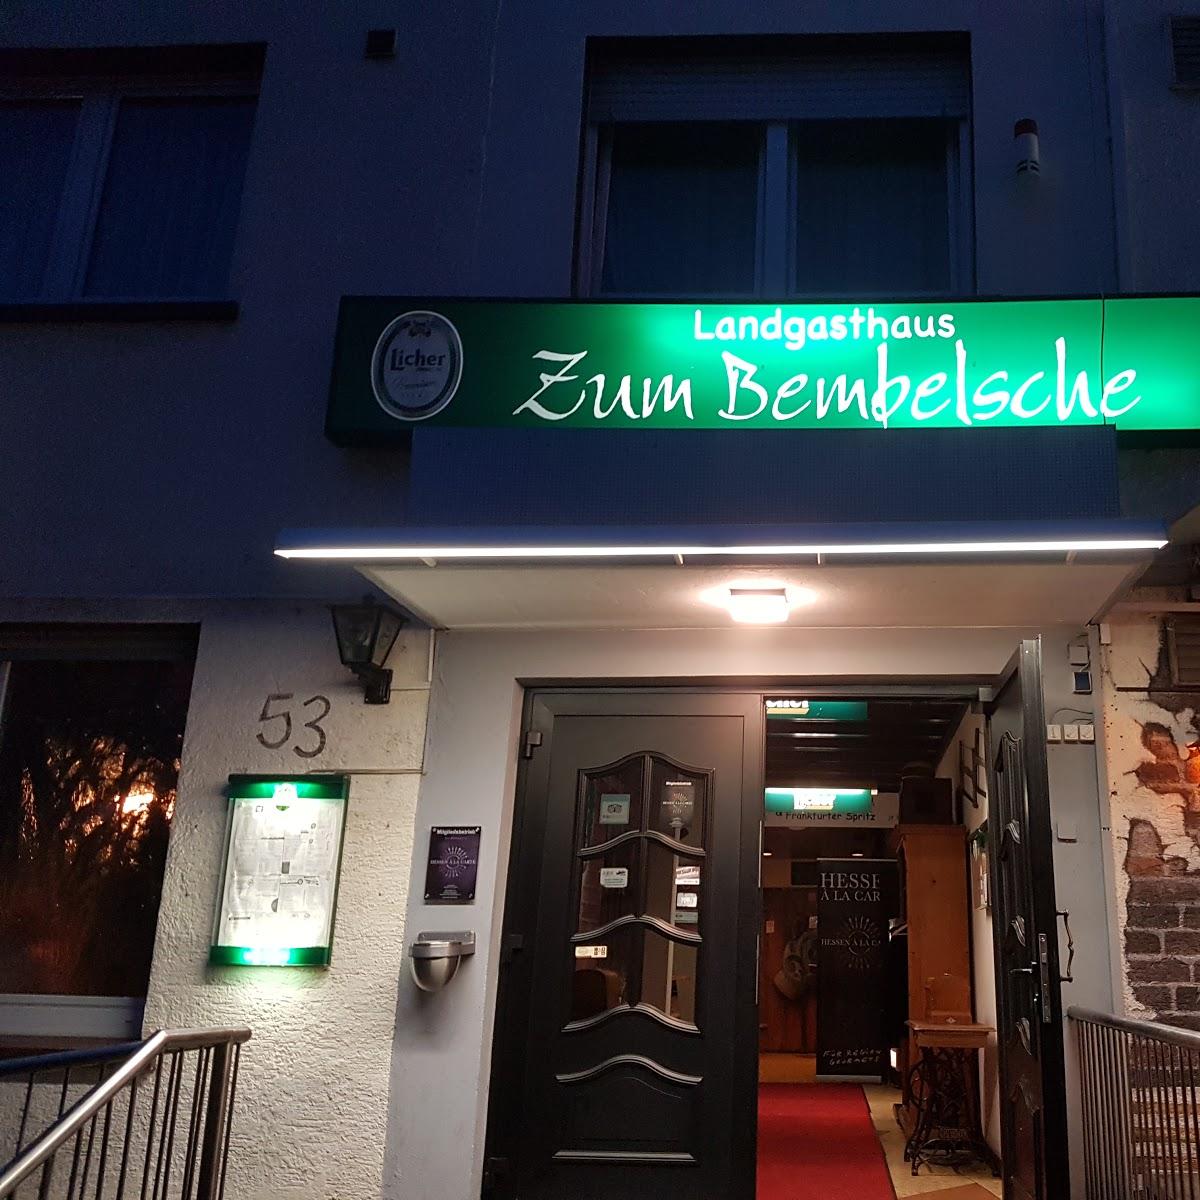 Restaurant "Zum Bembelsche" in Raunheim